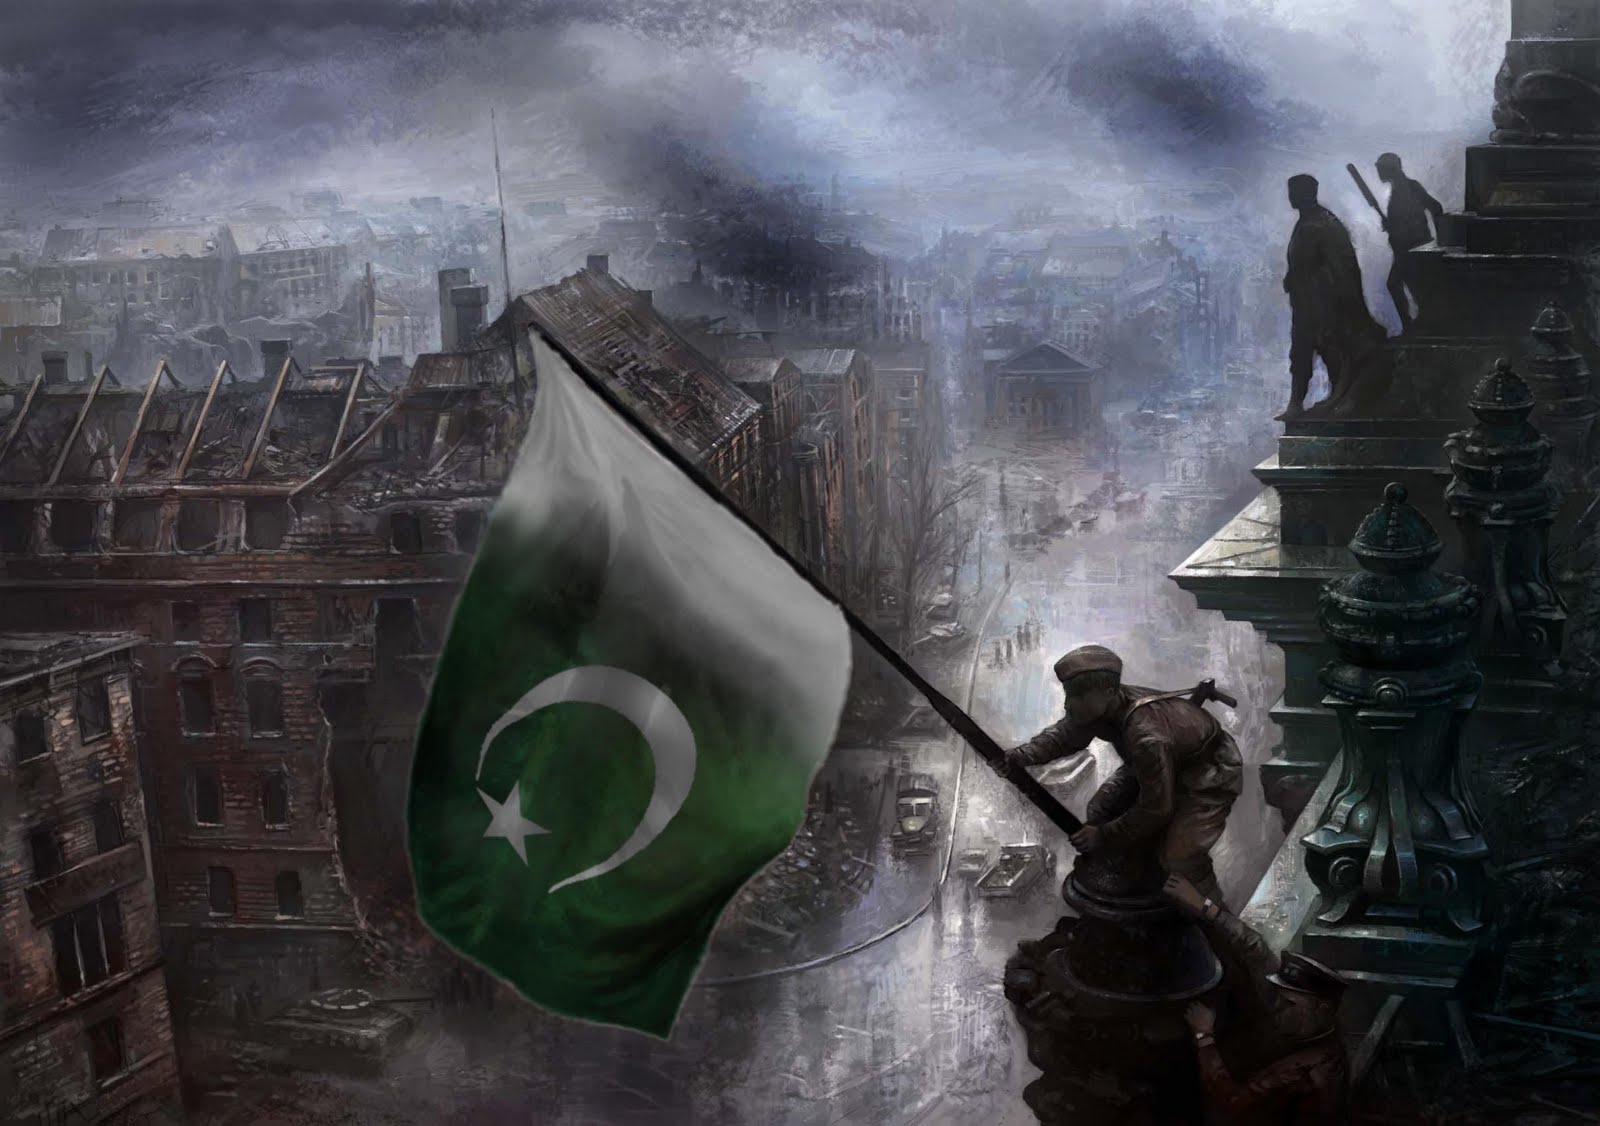 fond d'écran du drapeau du pakistan,jeu d'aventure d'action,oeuvre de cg,illustration,art,compositing numérique